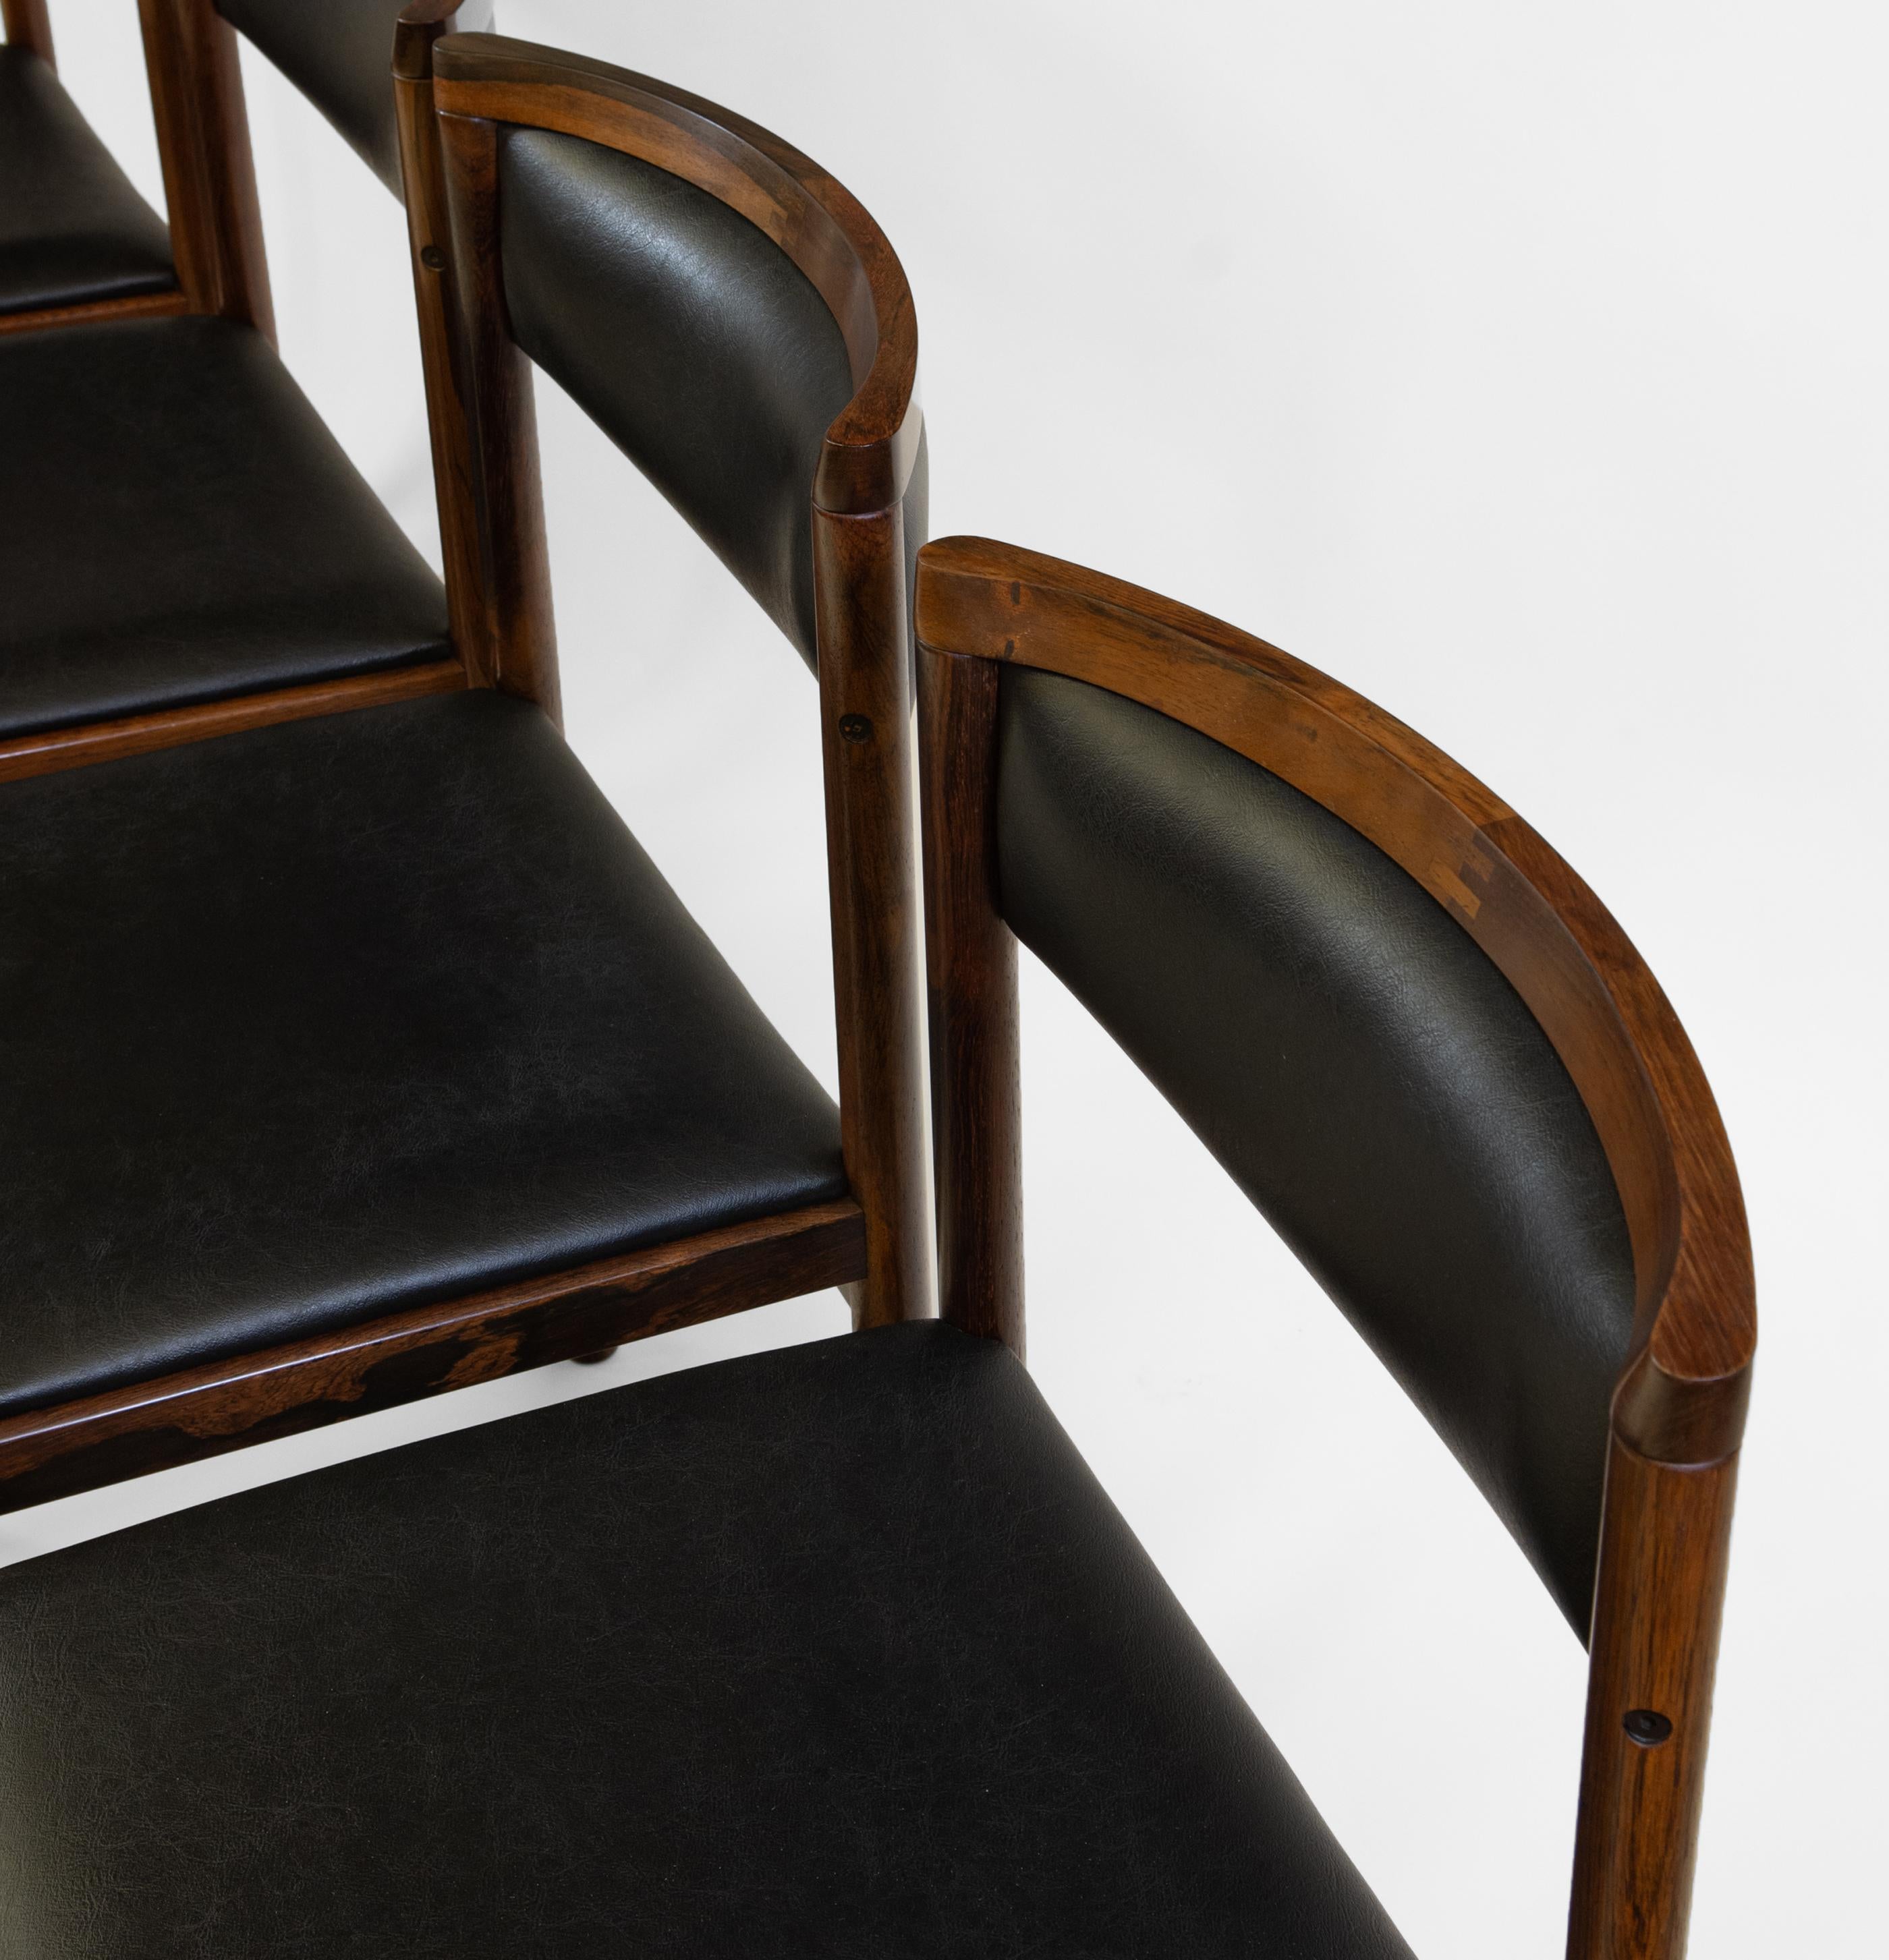 Ensemble danois du milieu du siècle de quatre chaises de salle à manger en bois de rose massif avec assise en vinyle texturé noir par Saxkjøbing Savvaerk. Circa 1960. Estampillé : SAX Fabriqué au Danemark.

Les frais de livraison sont INCLUS dans le